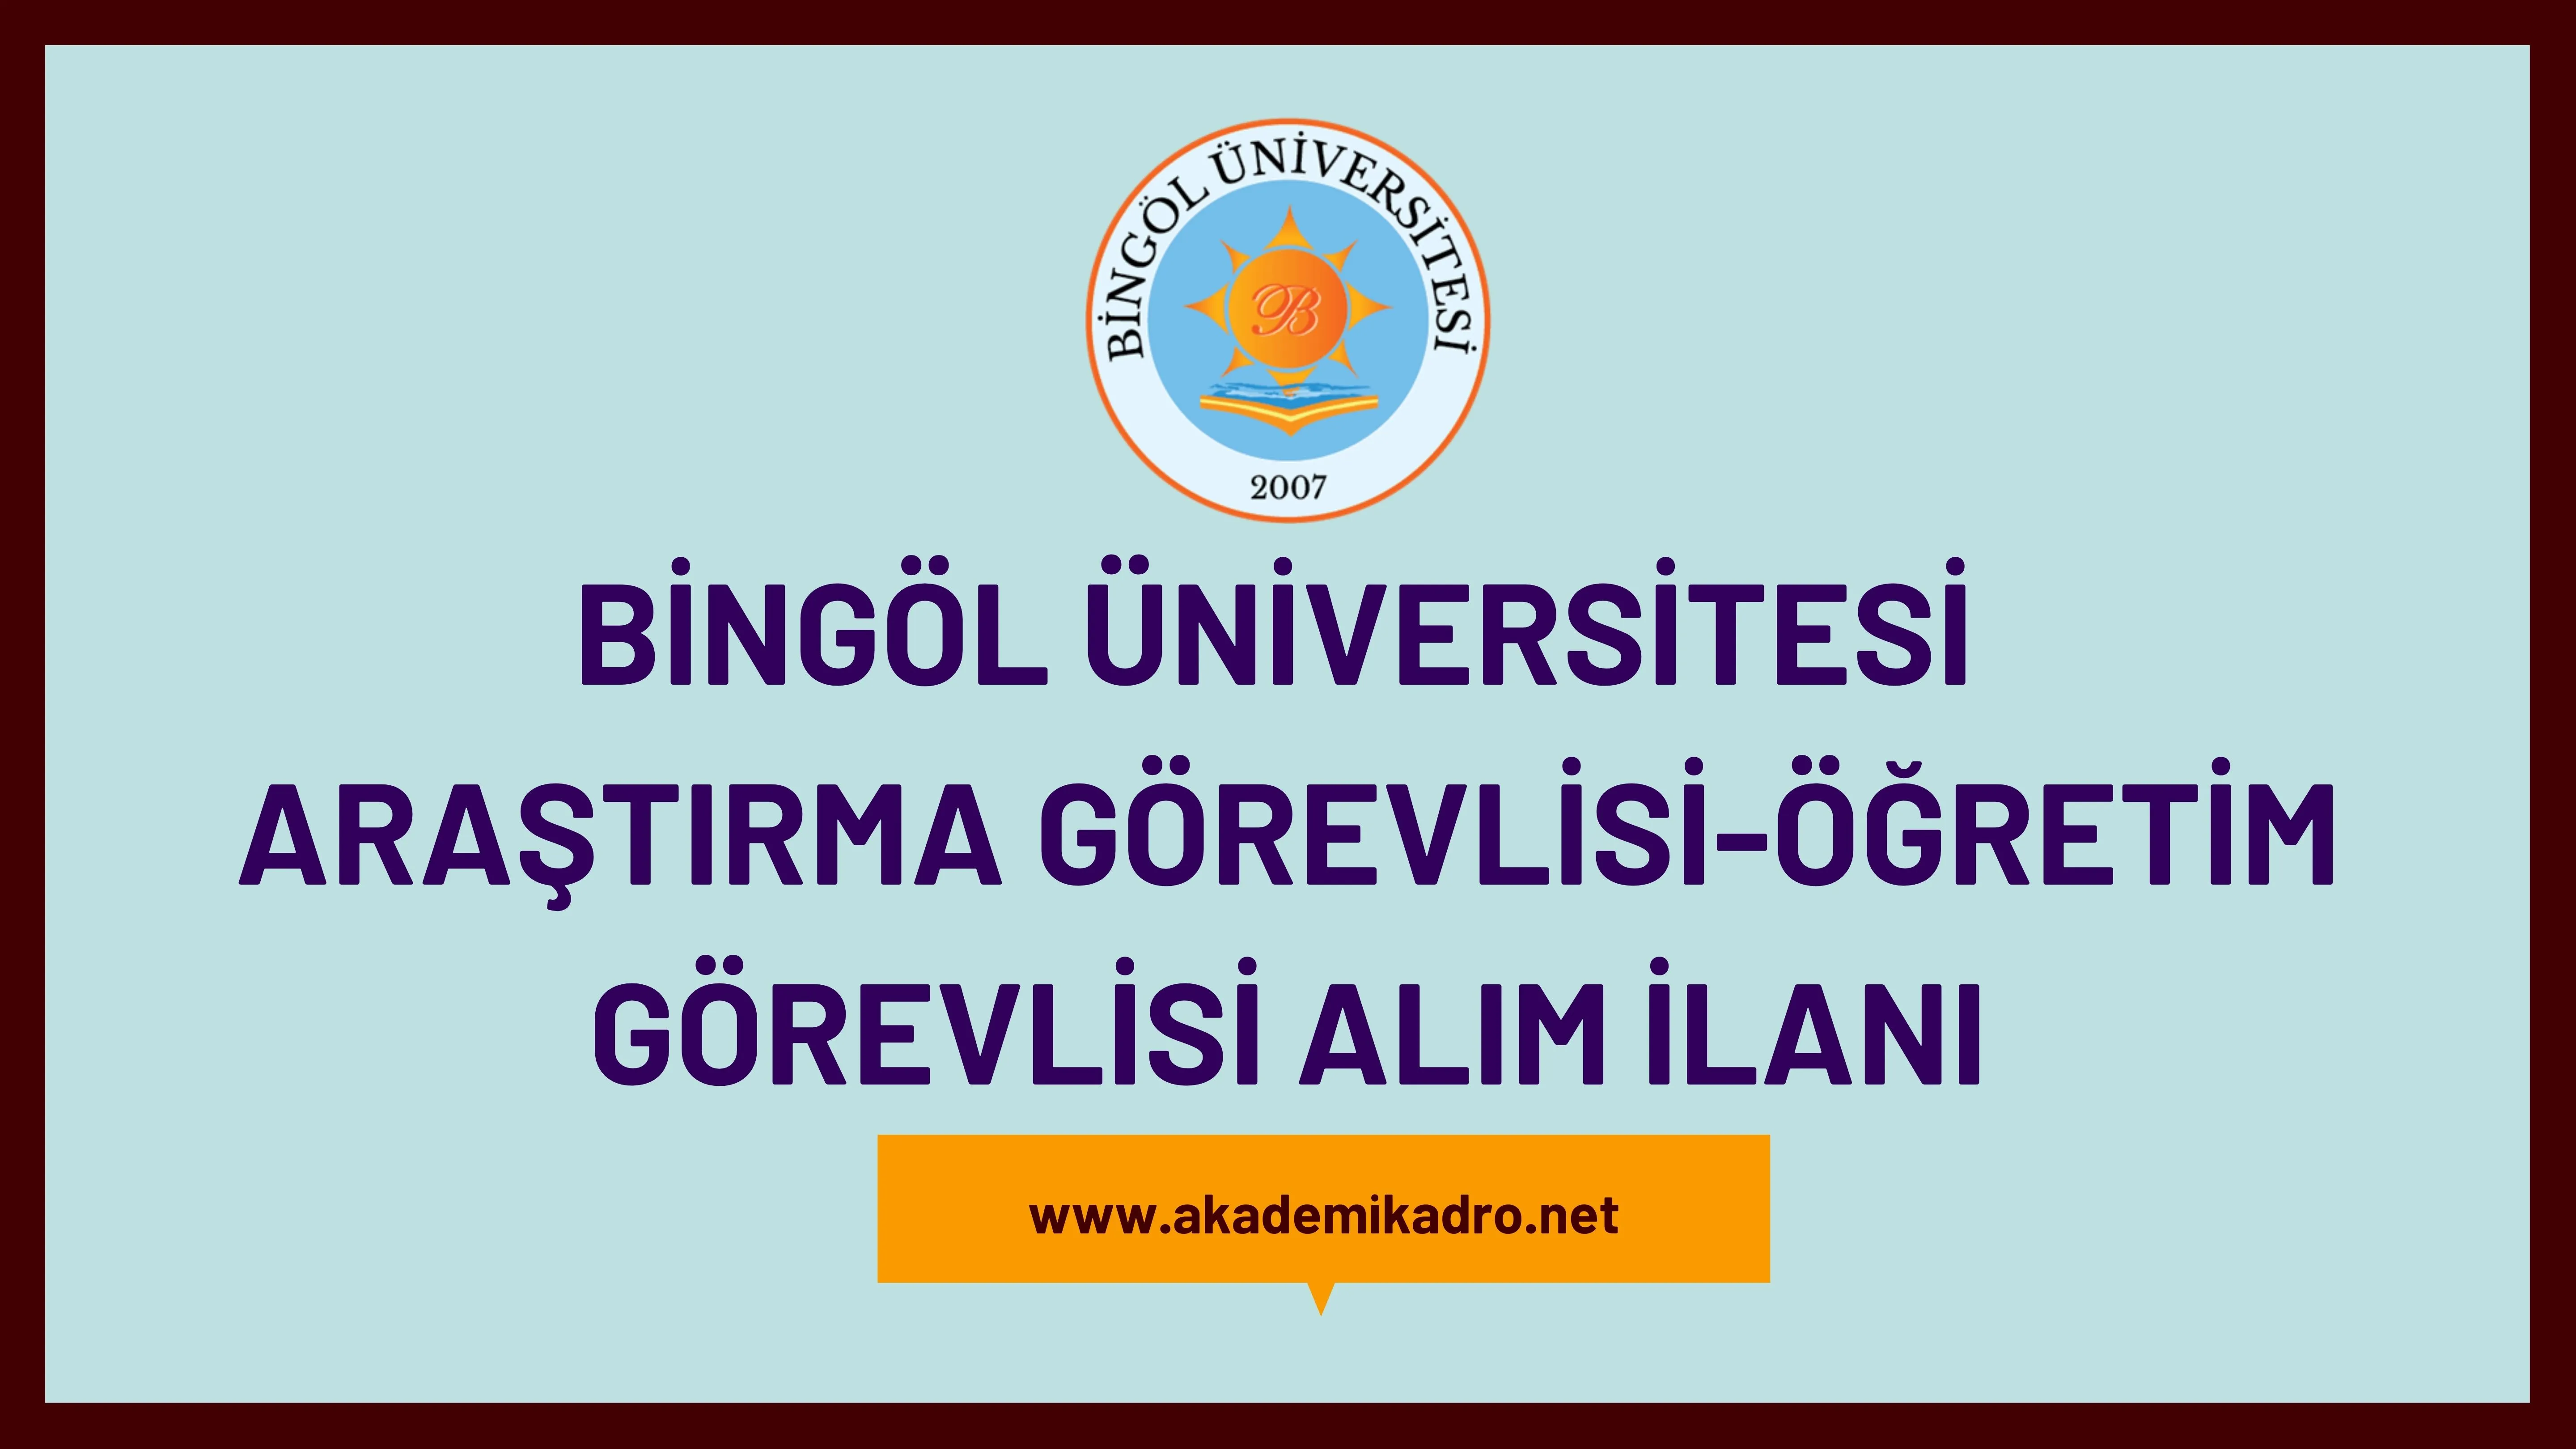 Bingöl Üniversitesi çeşitli branşlarda 20 Araştırma ve öğretim görevlisi alacak. Son başvuru tarihi 20 Aralık 2022.